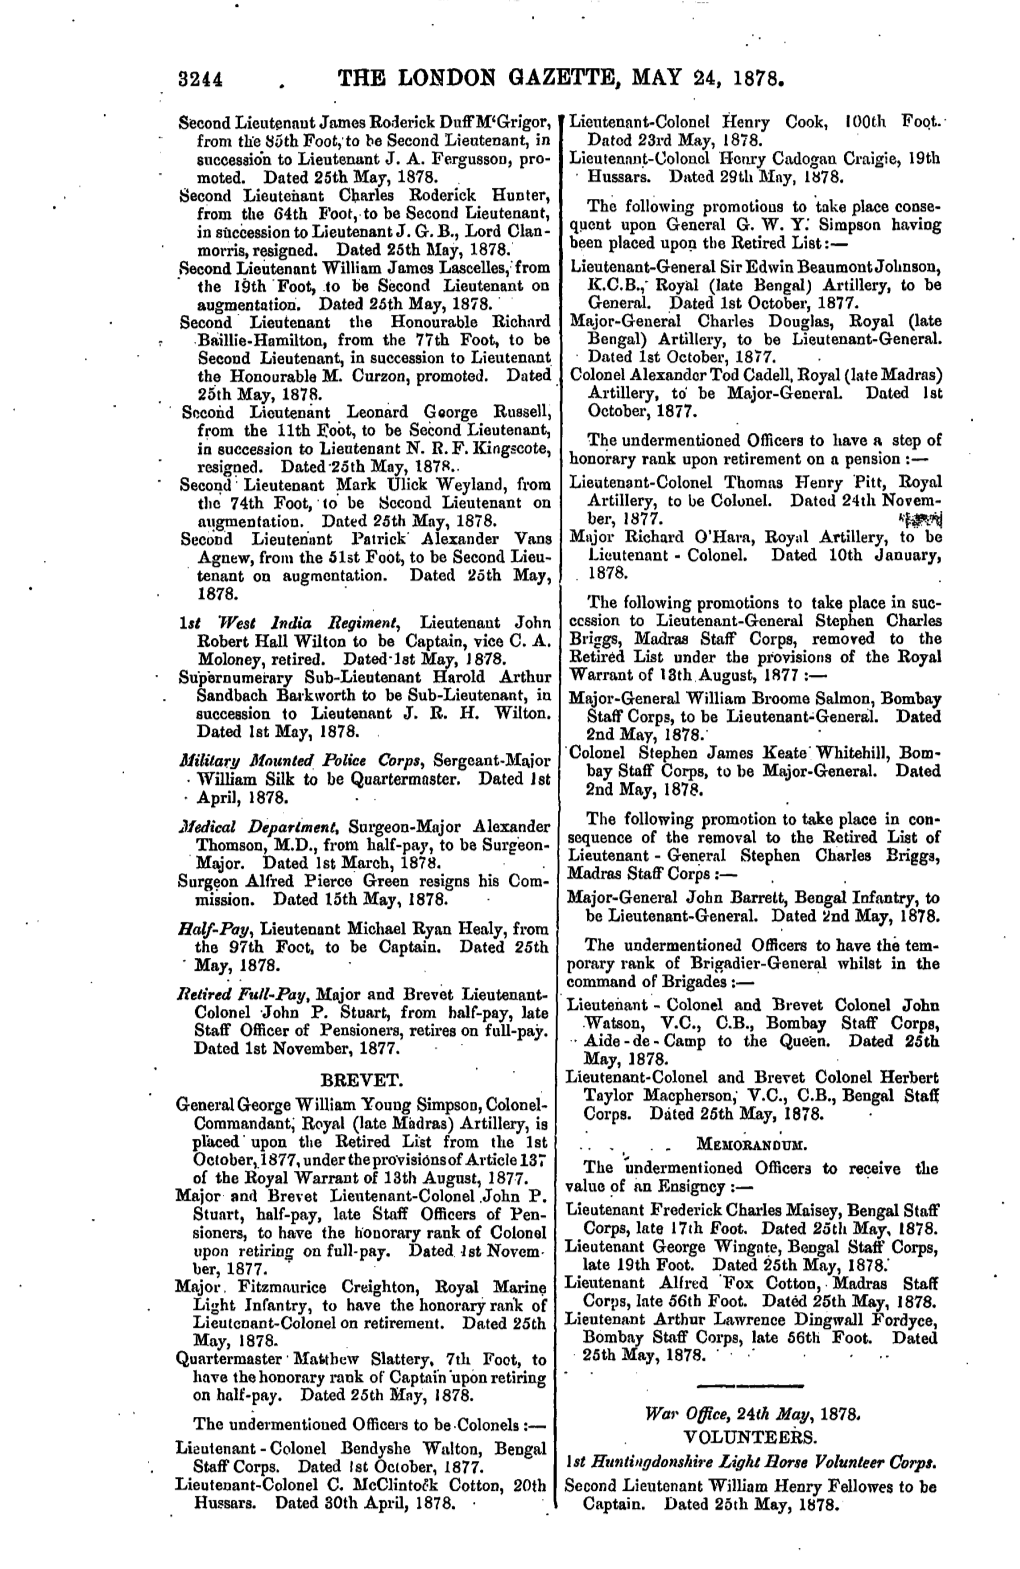 3244 the London Gazette, May 24, 1878